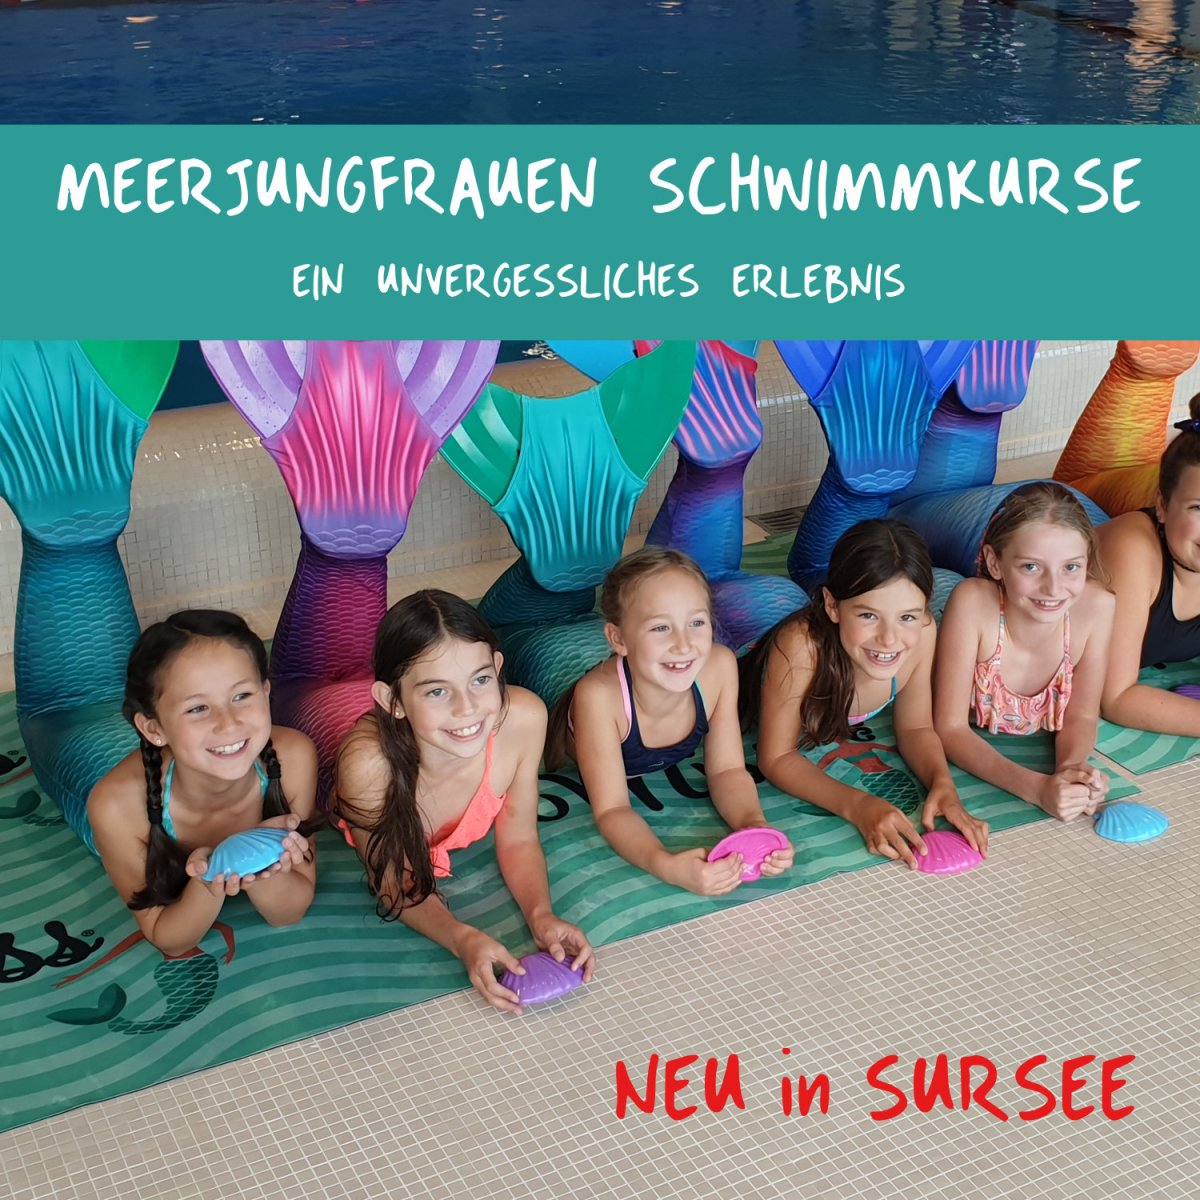 Neue Meerjungfrauen Schwimmkurse in Willisau und Sursee - Neue Meerjungfrauen Schwimmkurse in Willisau und Sursee 